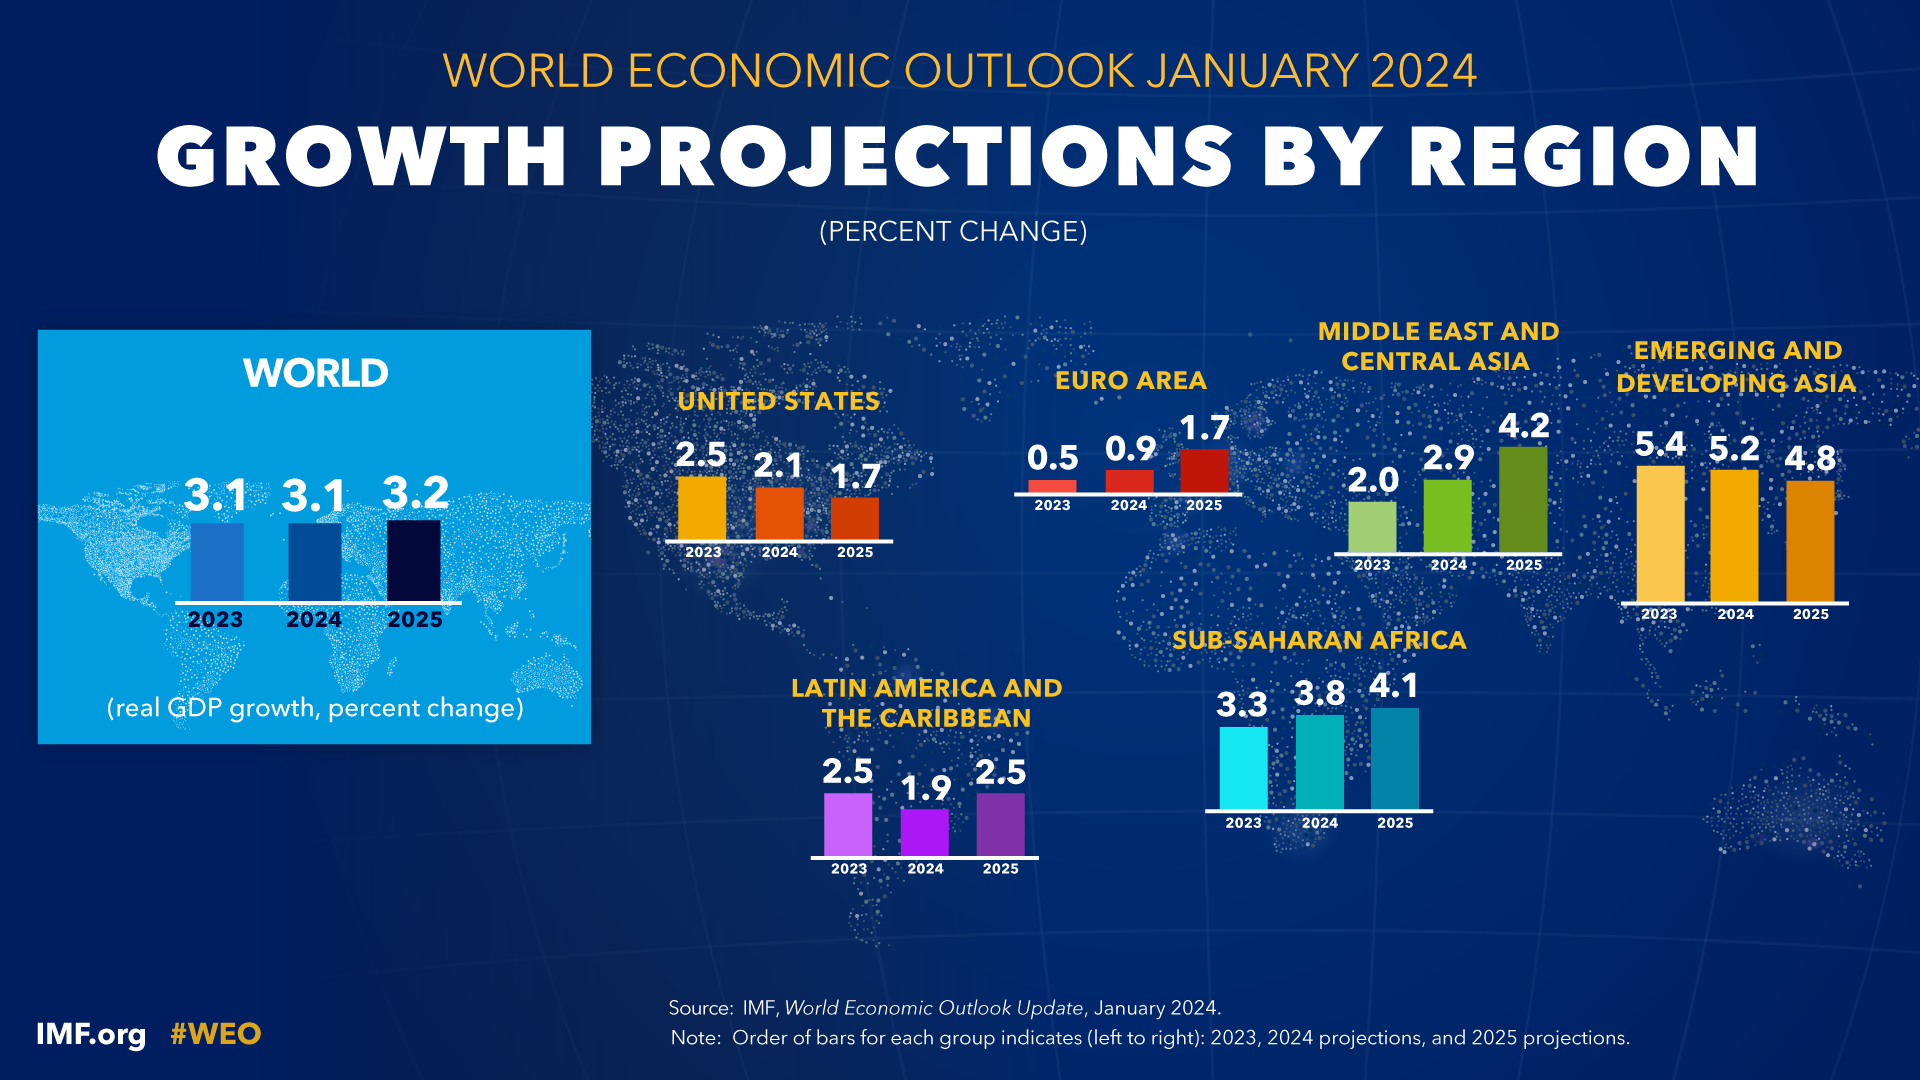 صندوق النقد الدولي يخفض توقعات النمو الاقتصادي لمصر في العام المالي 2023/24 إلى 3٪